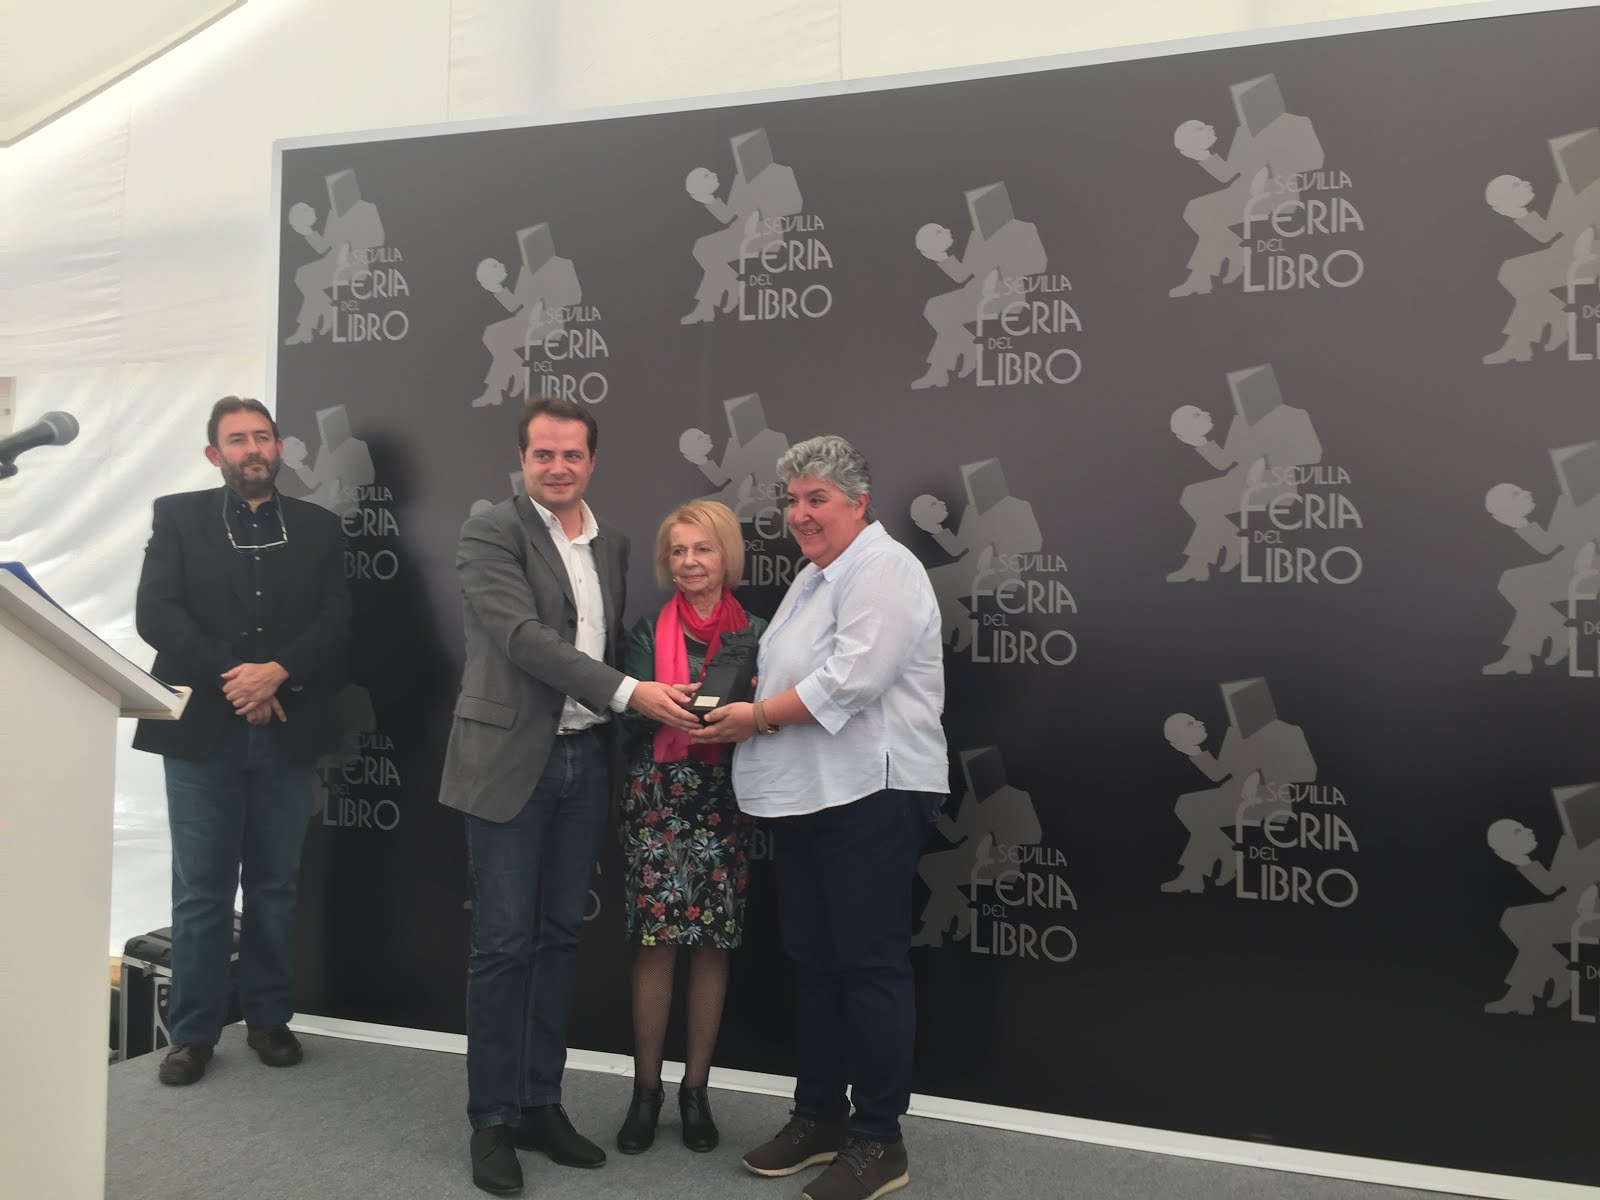 Recogiendo el premio otorgado por la Feria del Libro de Sevilla 2016